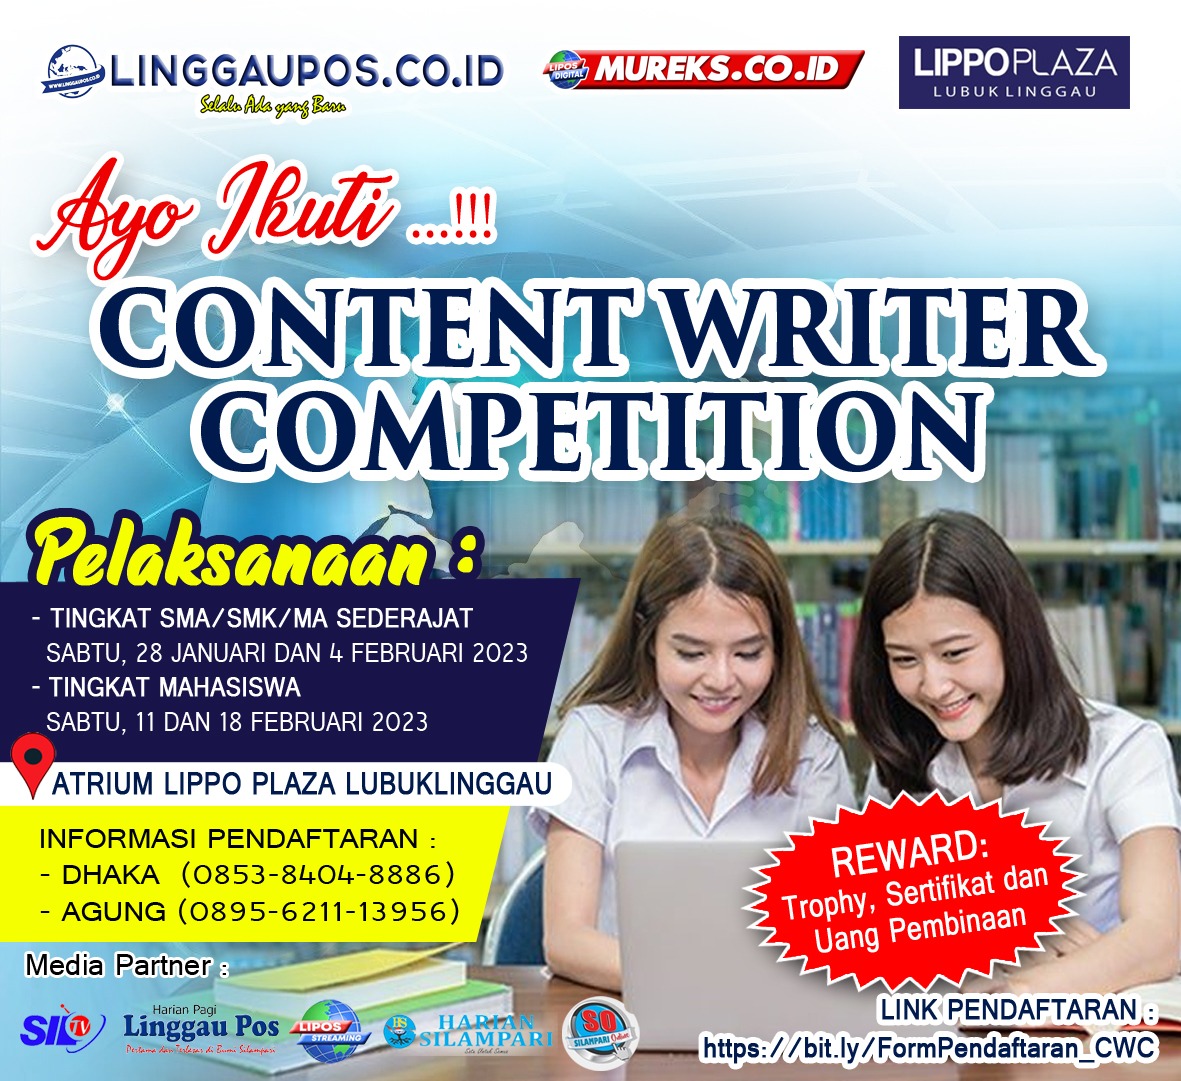 Ini Tips dan Trik, Agar Juara Content Writer Competition di Lippo Plaza Lubuklinggau, Peserta Wajib Tahu